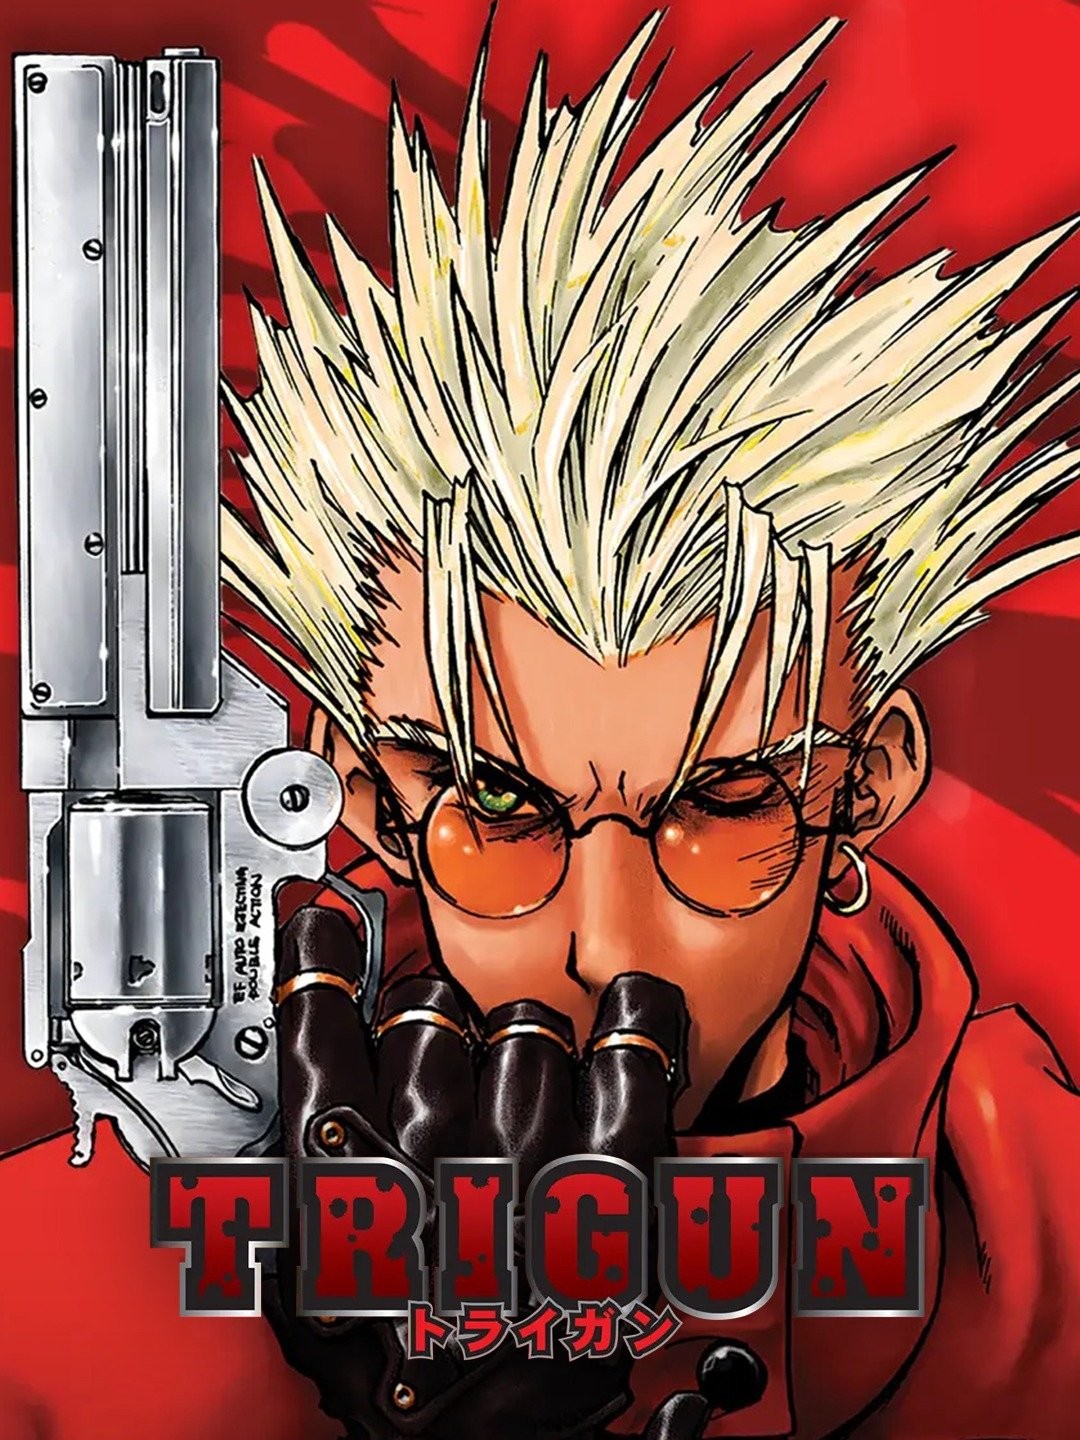 Anime News Centre - NEWS: The remake of the original Trigun manga, 